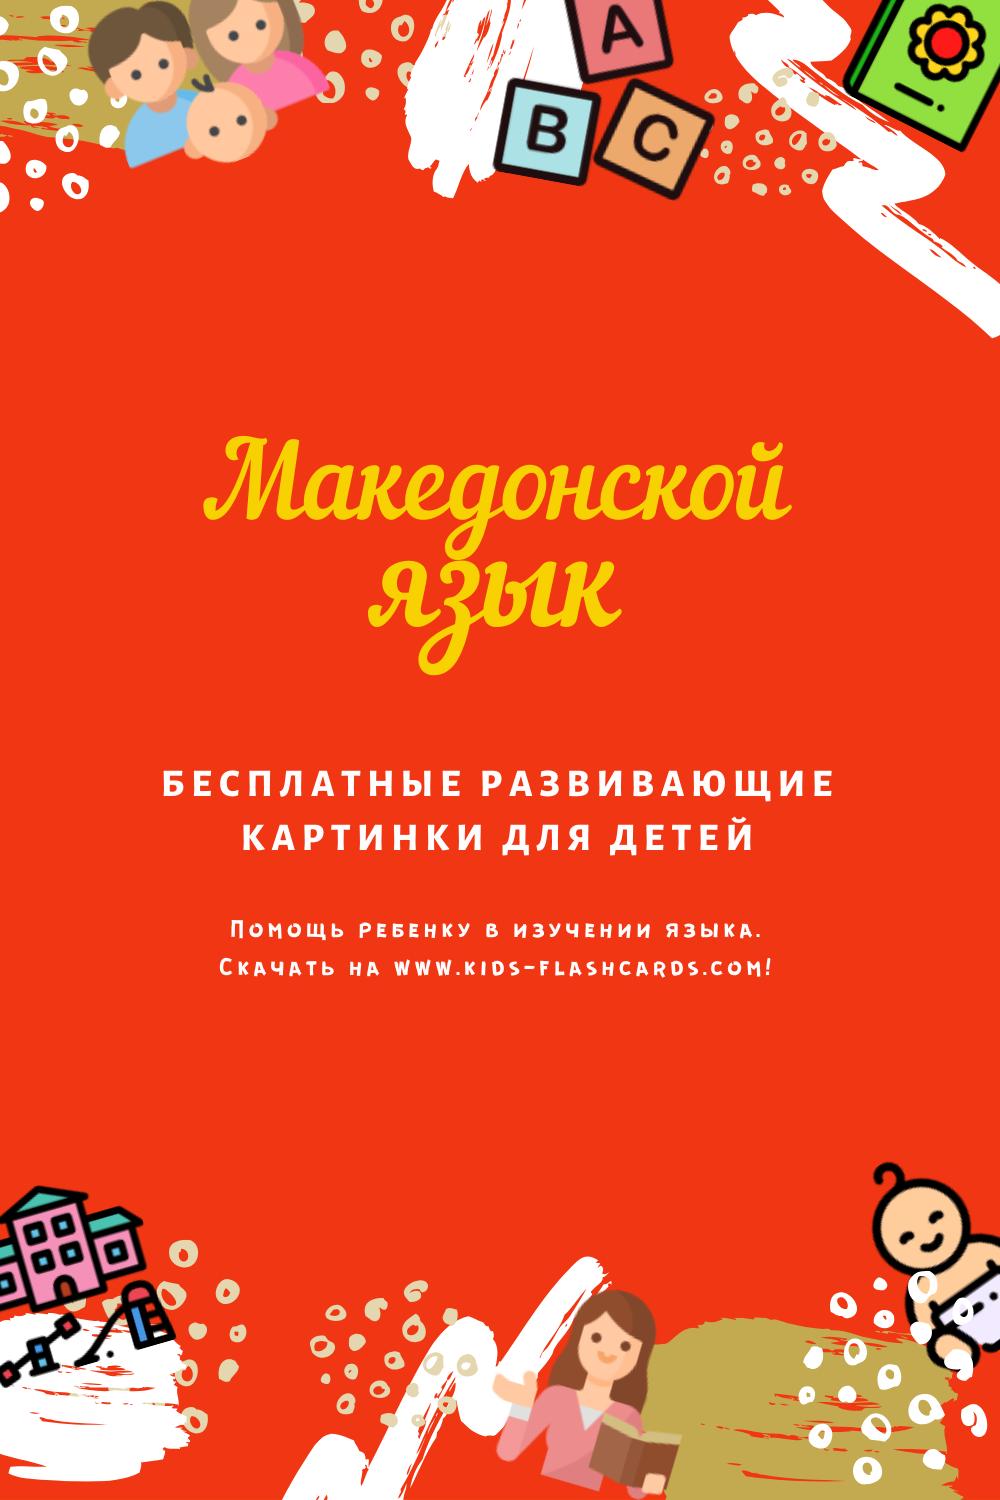 Македонский язык - бесплатные материалы для печати